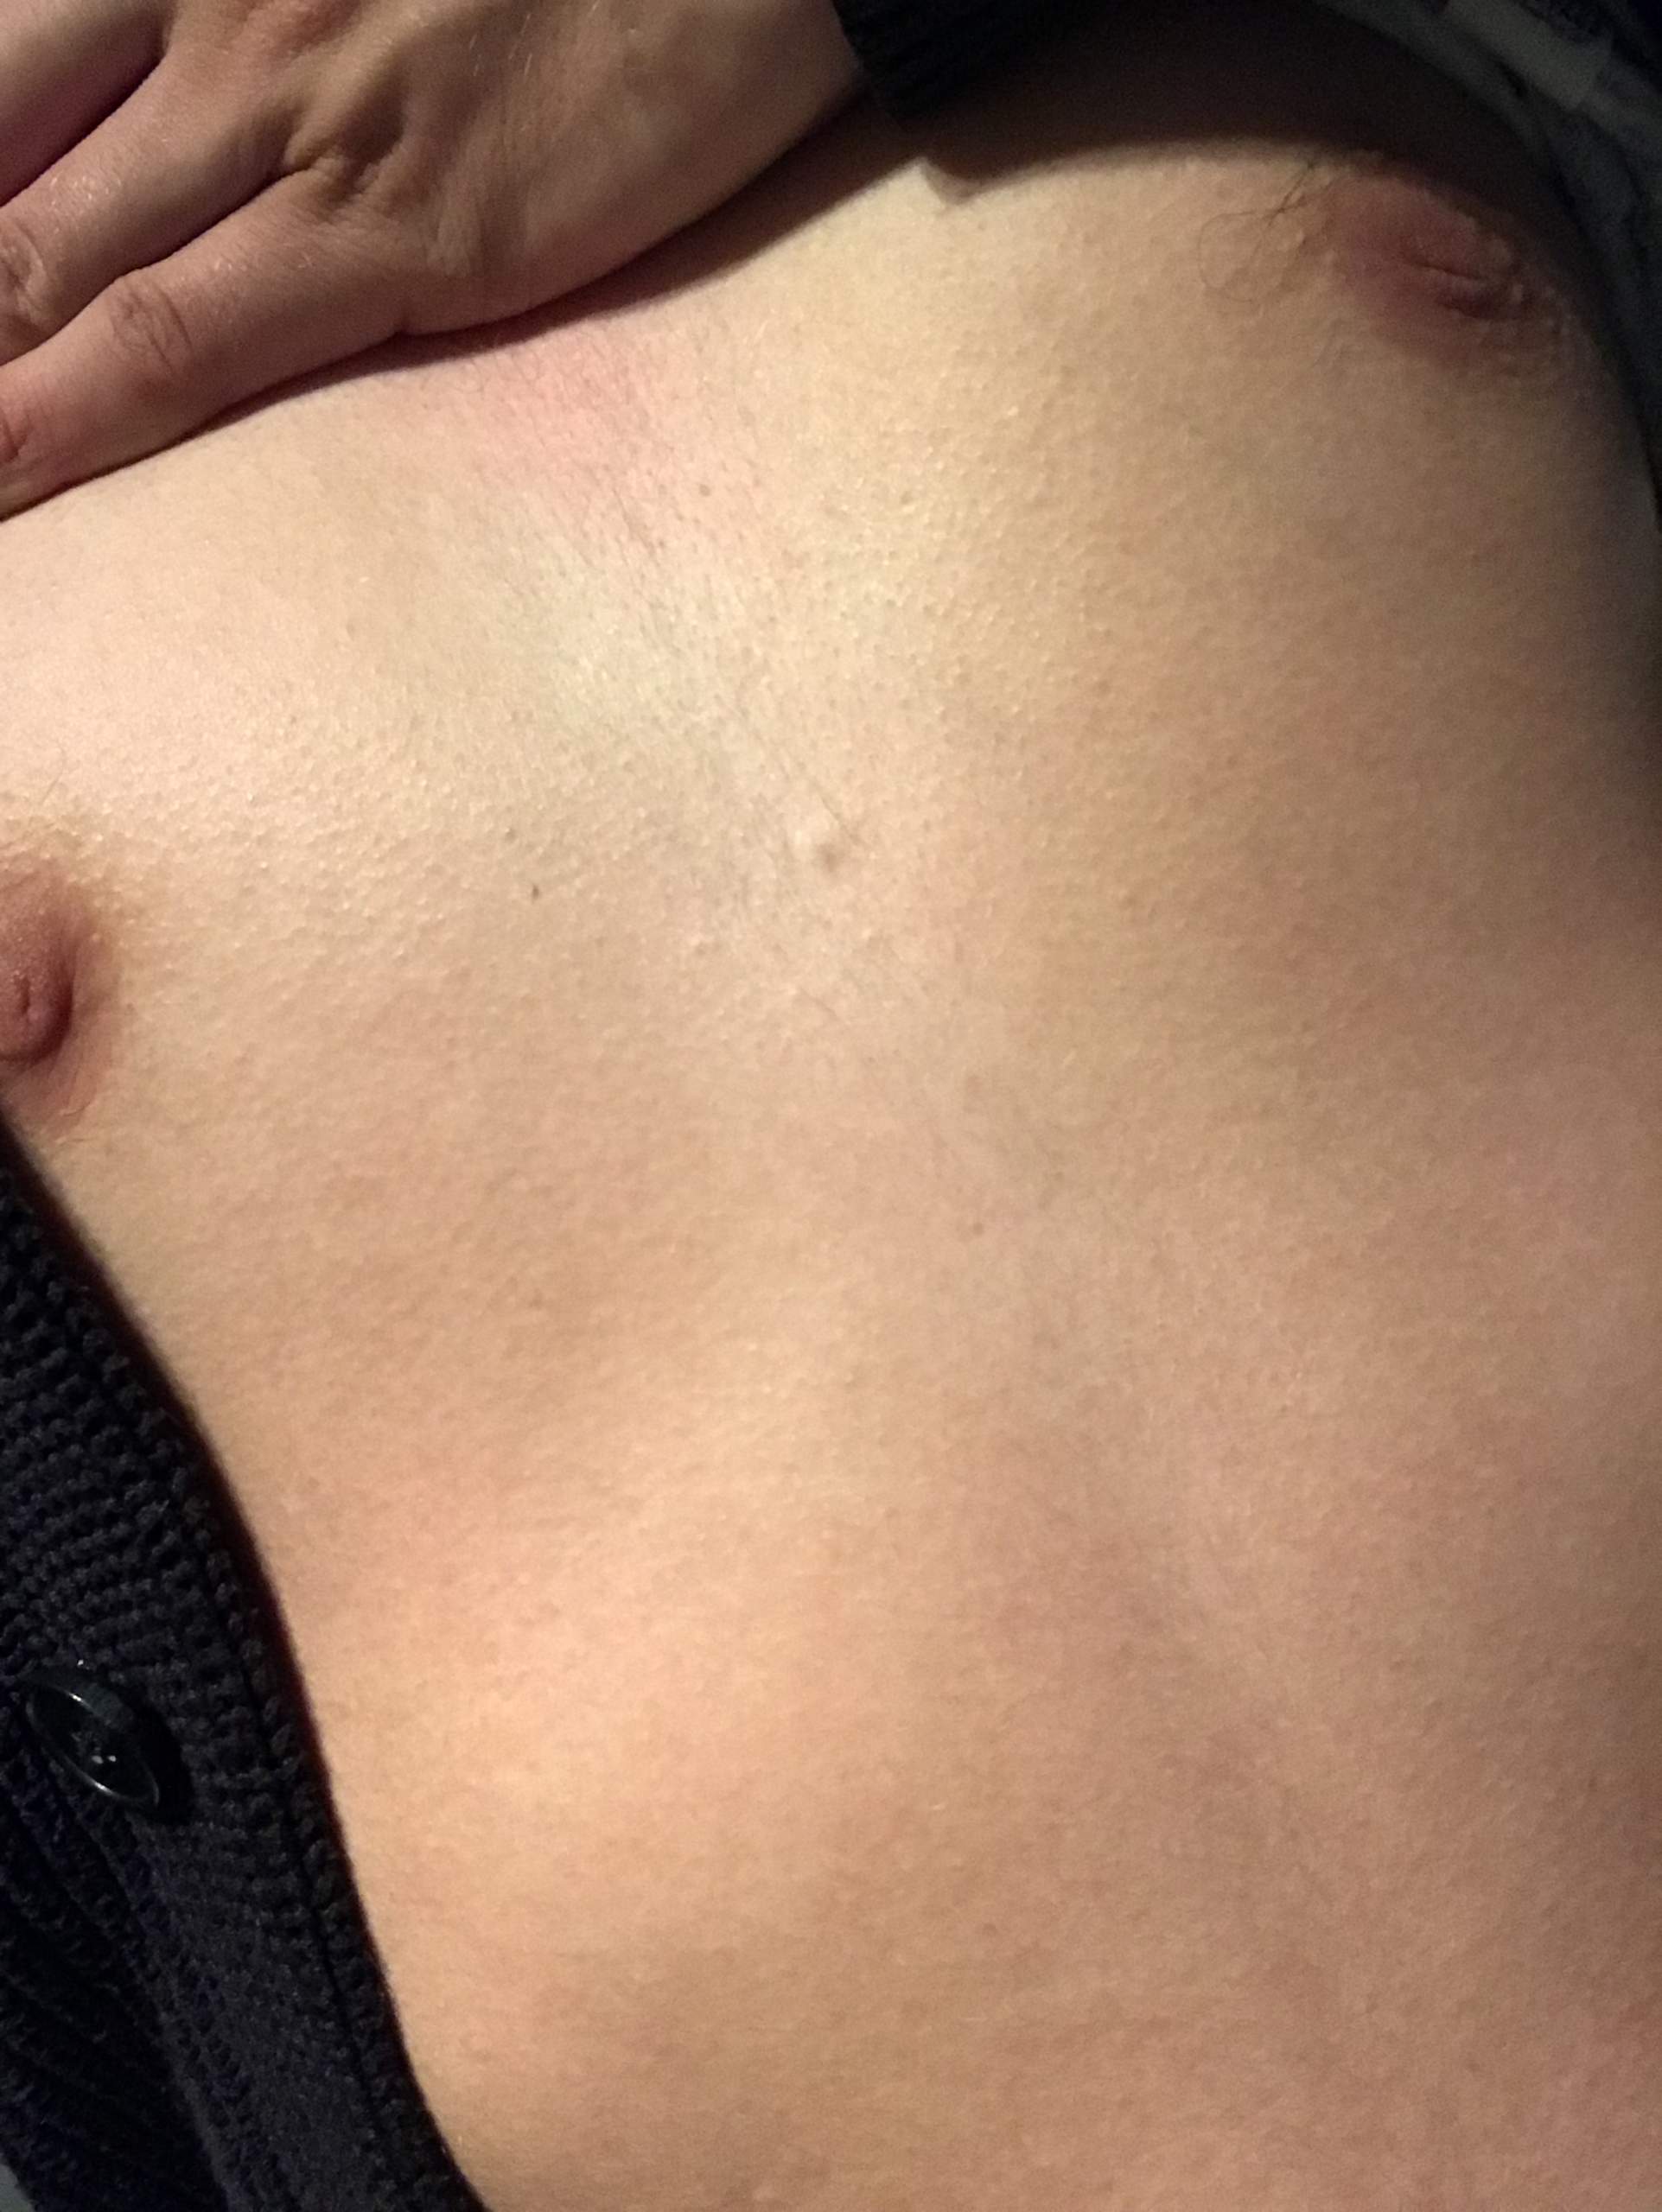 Knoten Knubbel in der Brust? (Gesundheit und Medizin, Knubbel unter Haut,  Knoten in Brust)